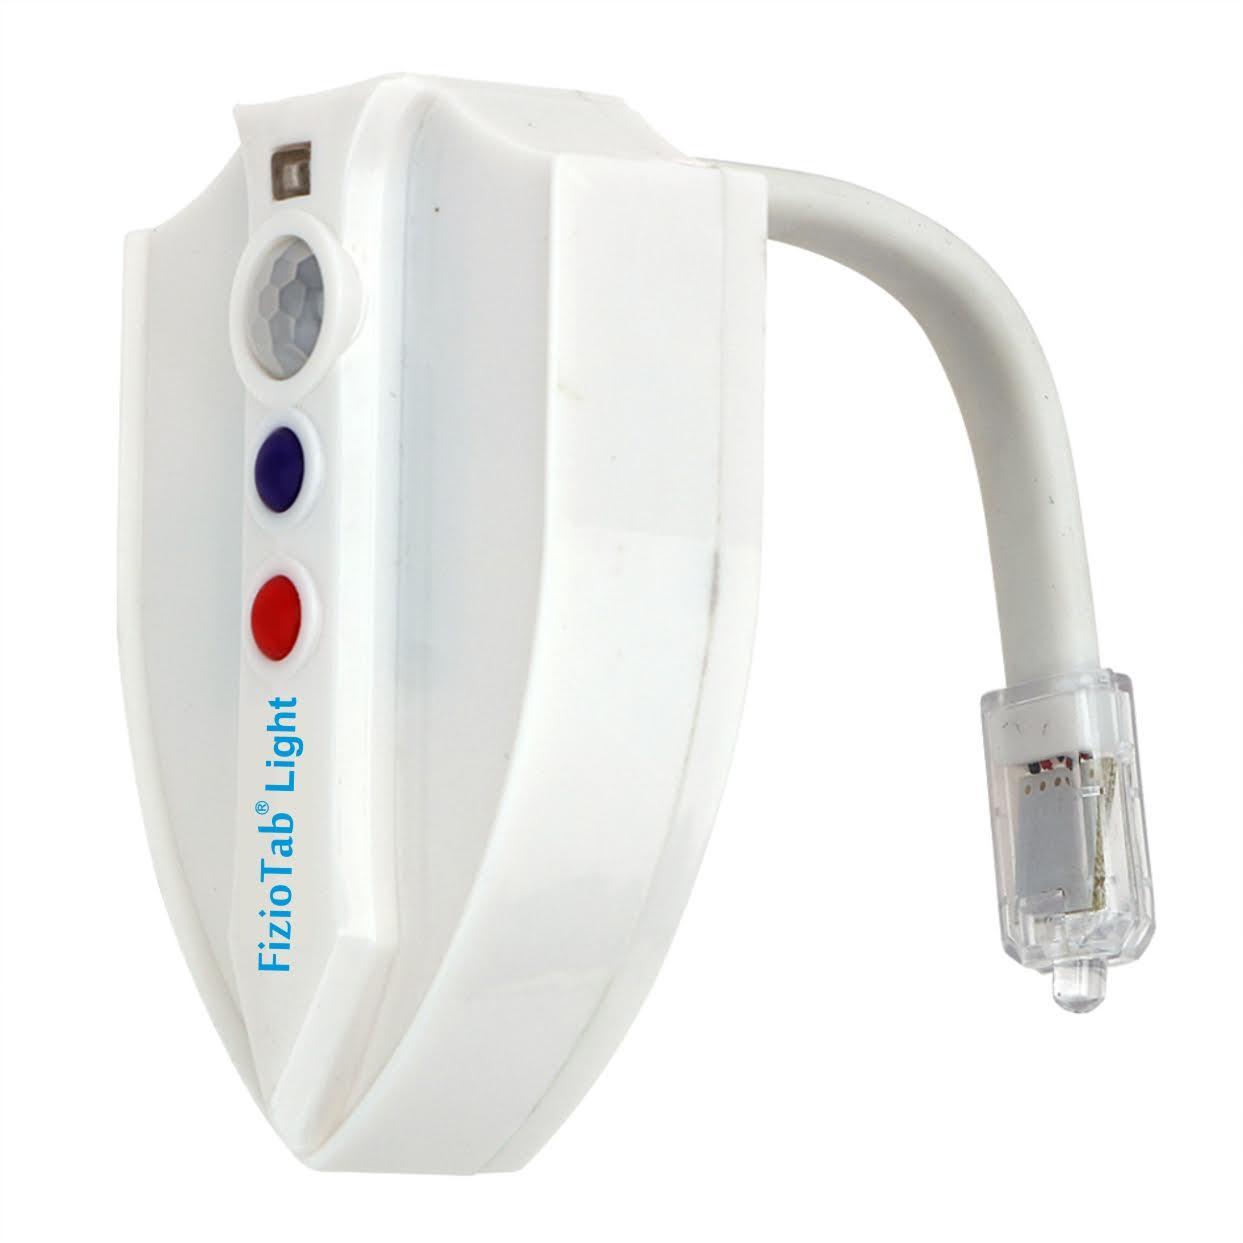 Lampa LED UV WC sterilizare, senzor miscare, baterii incluse